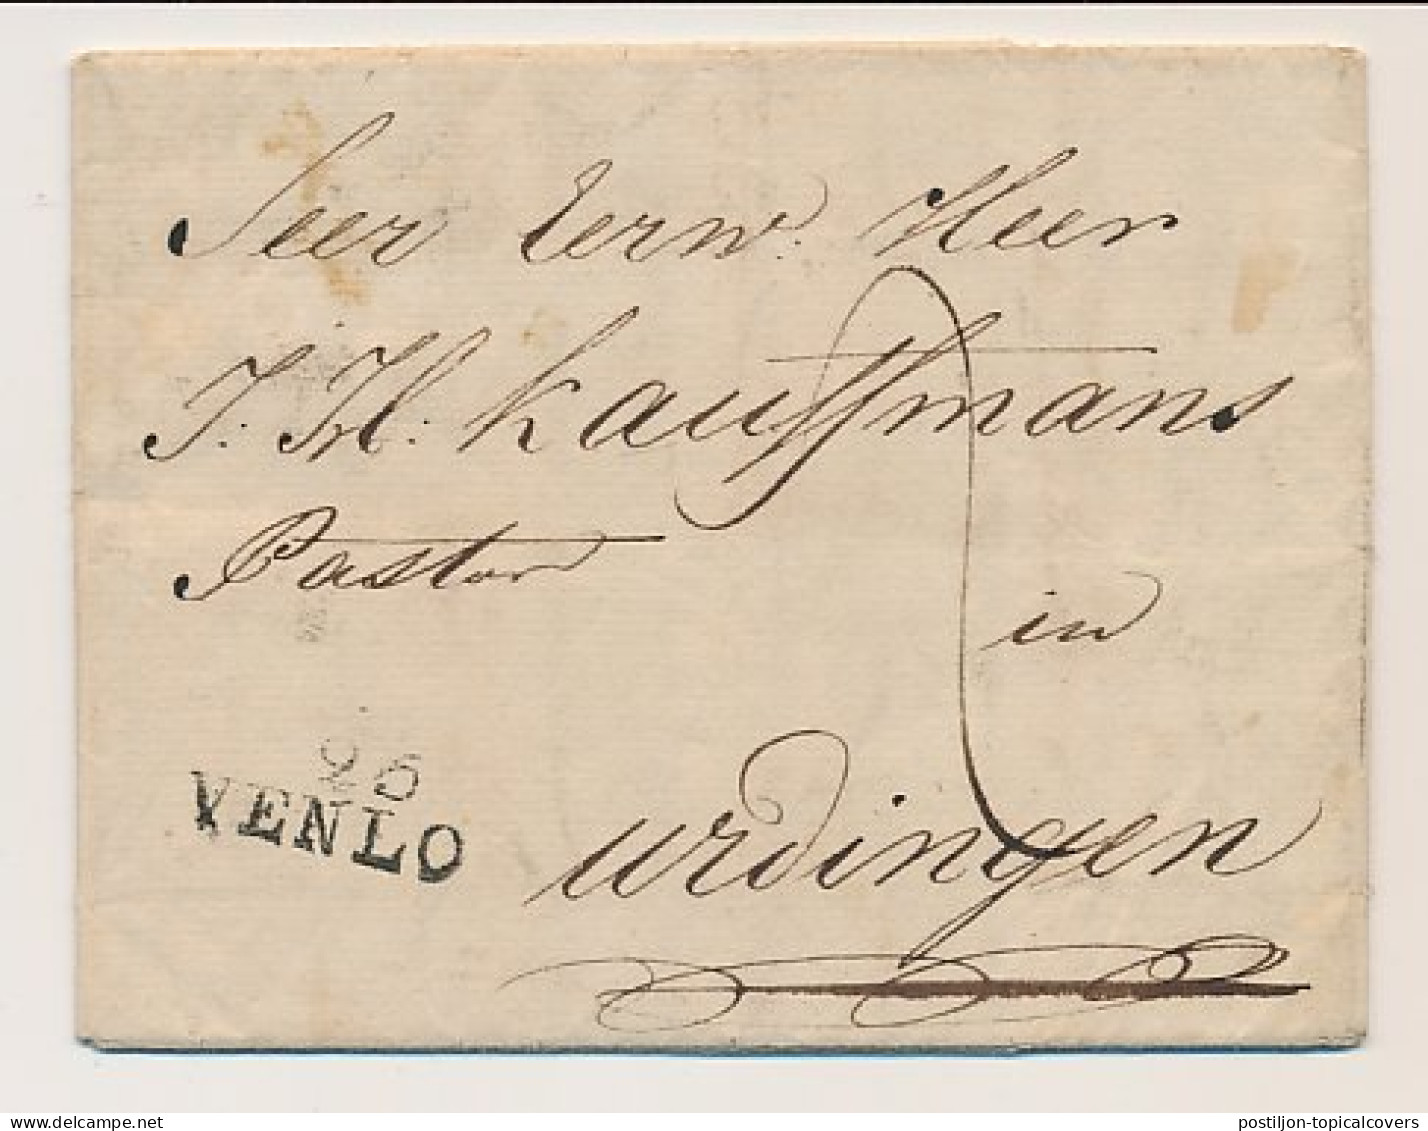 95 VENLO - Urdingen Duitsland 1803 - ...-1852 Préphilatélie